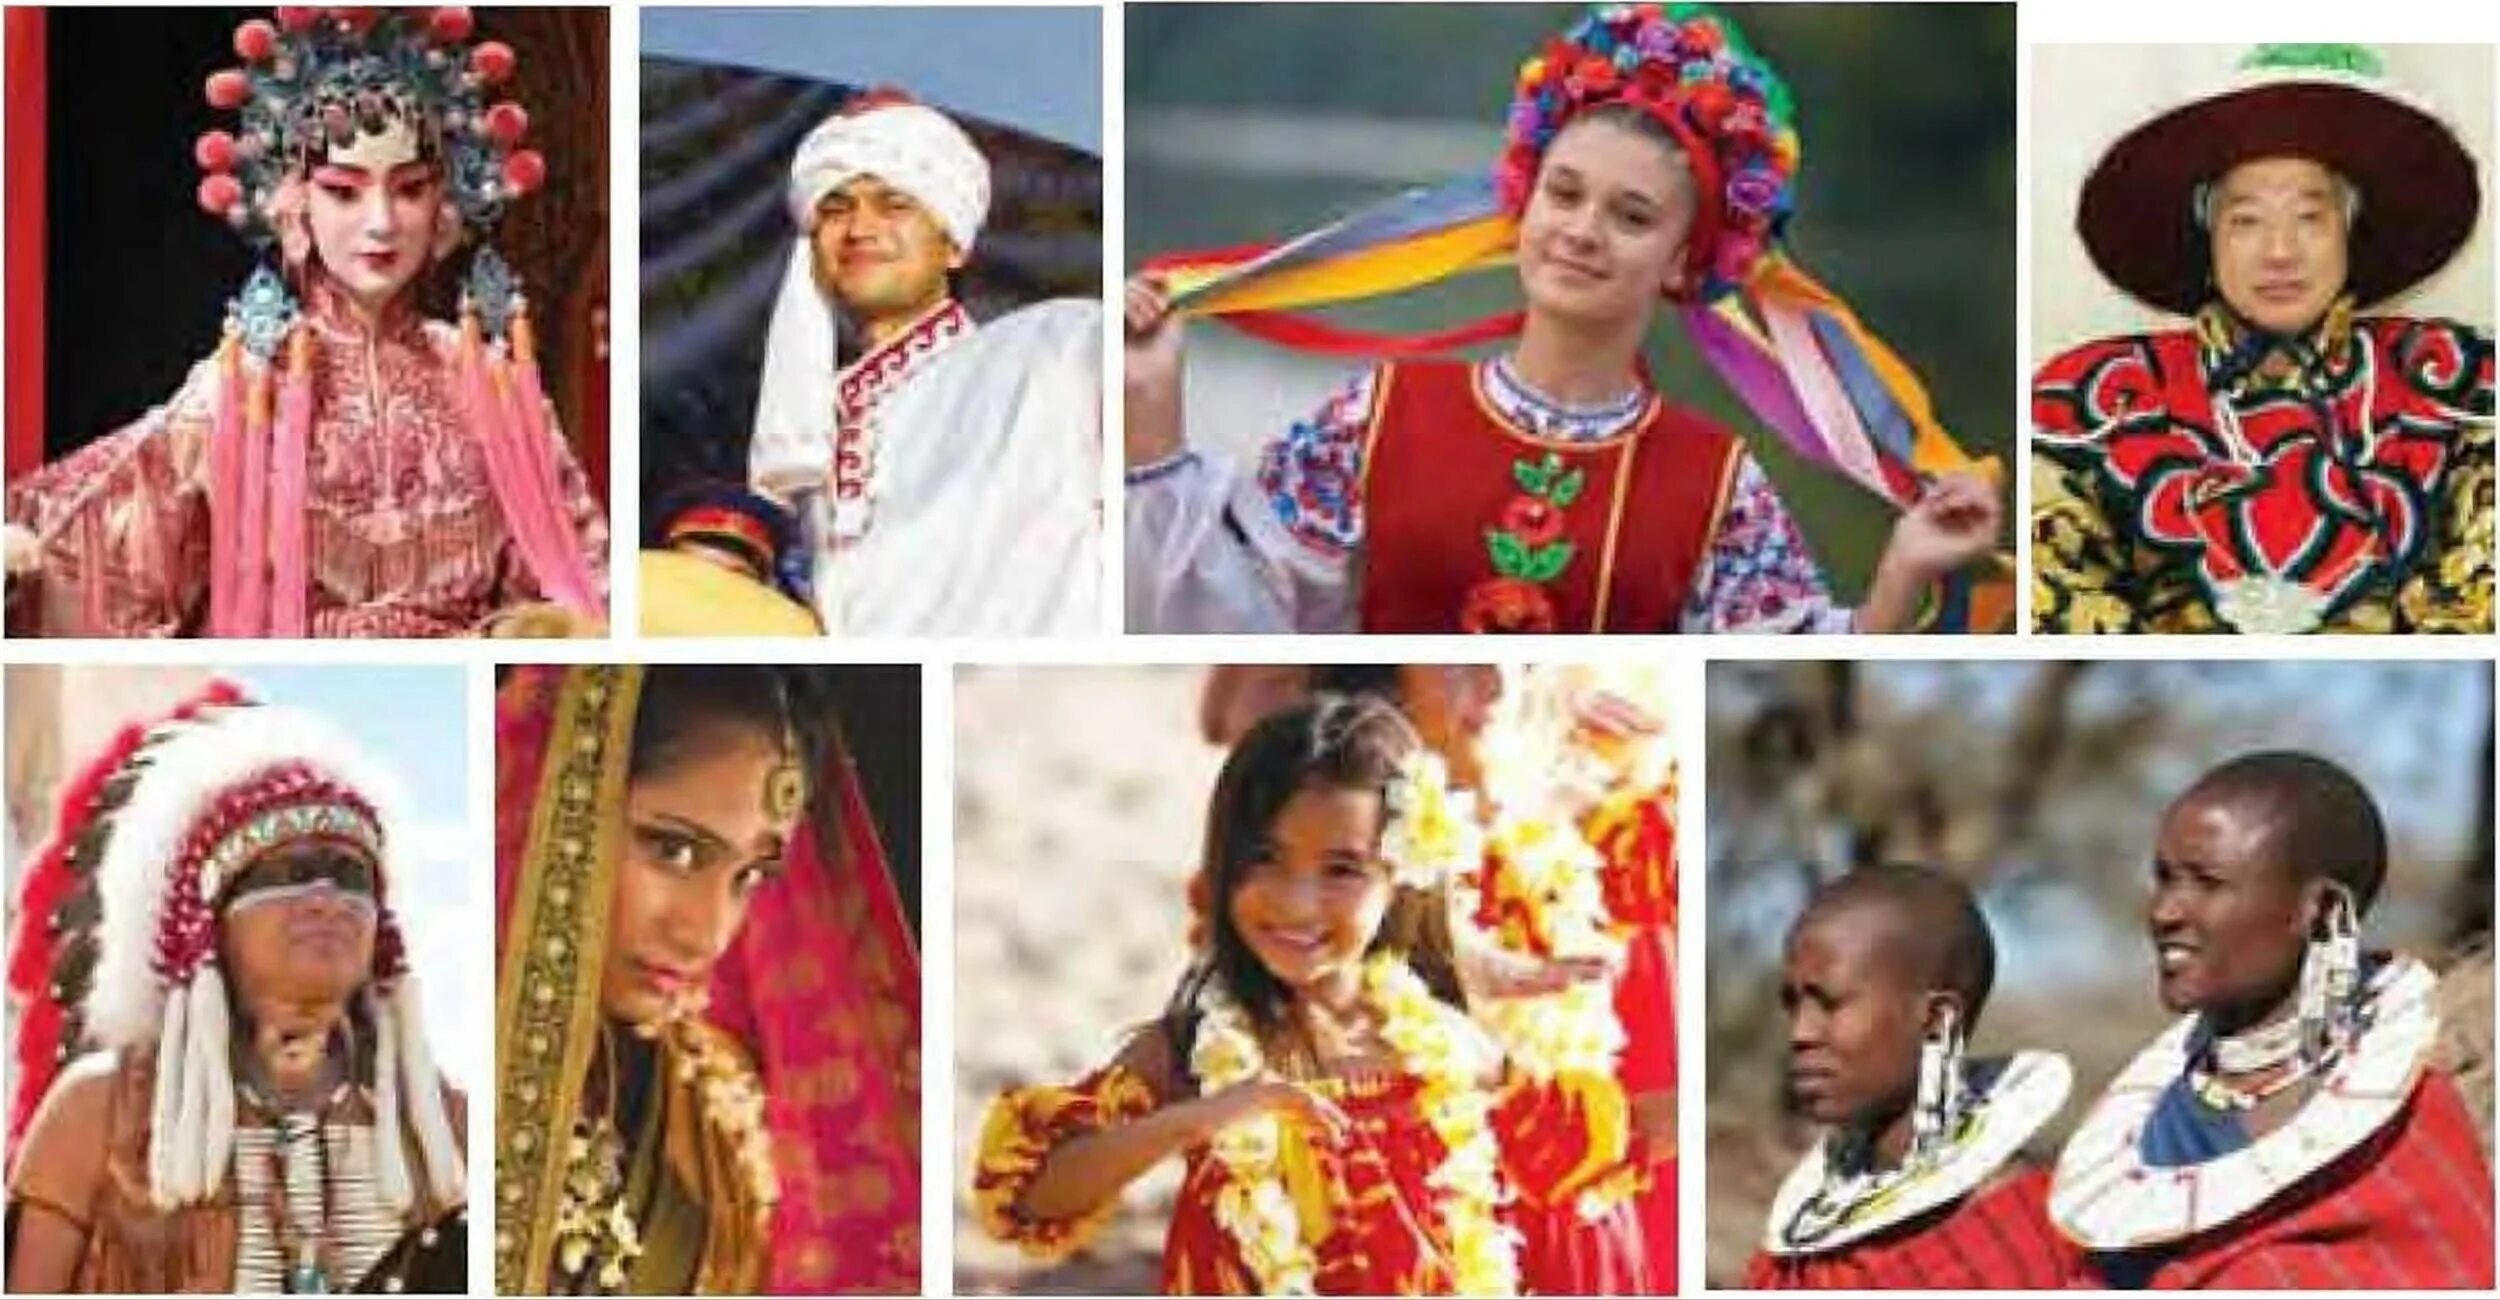 Связь разных народов. Разные народы. Народы земли. Люди разных культур. Этническое разнообразие.